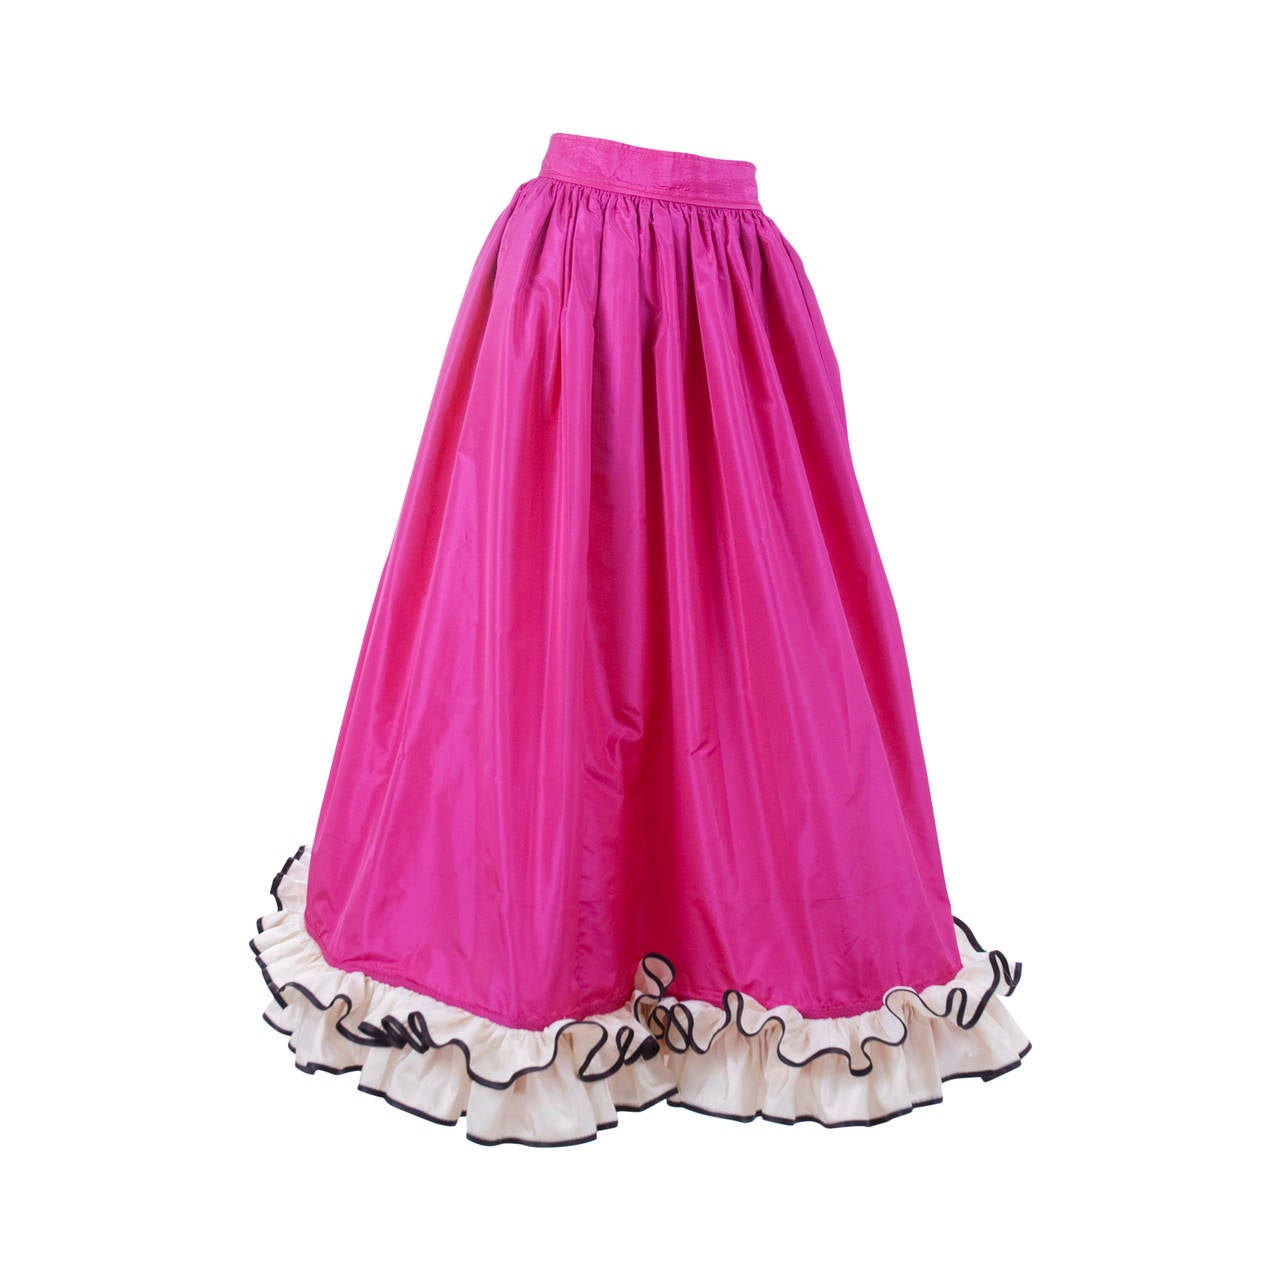 Yves Saint Laurent Evening Skirt For Sale